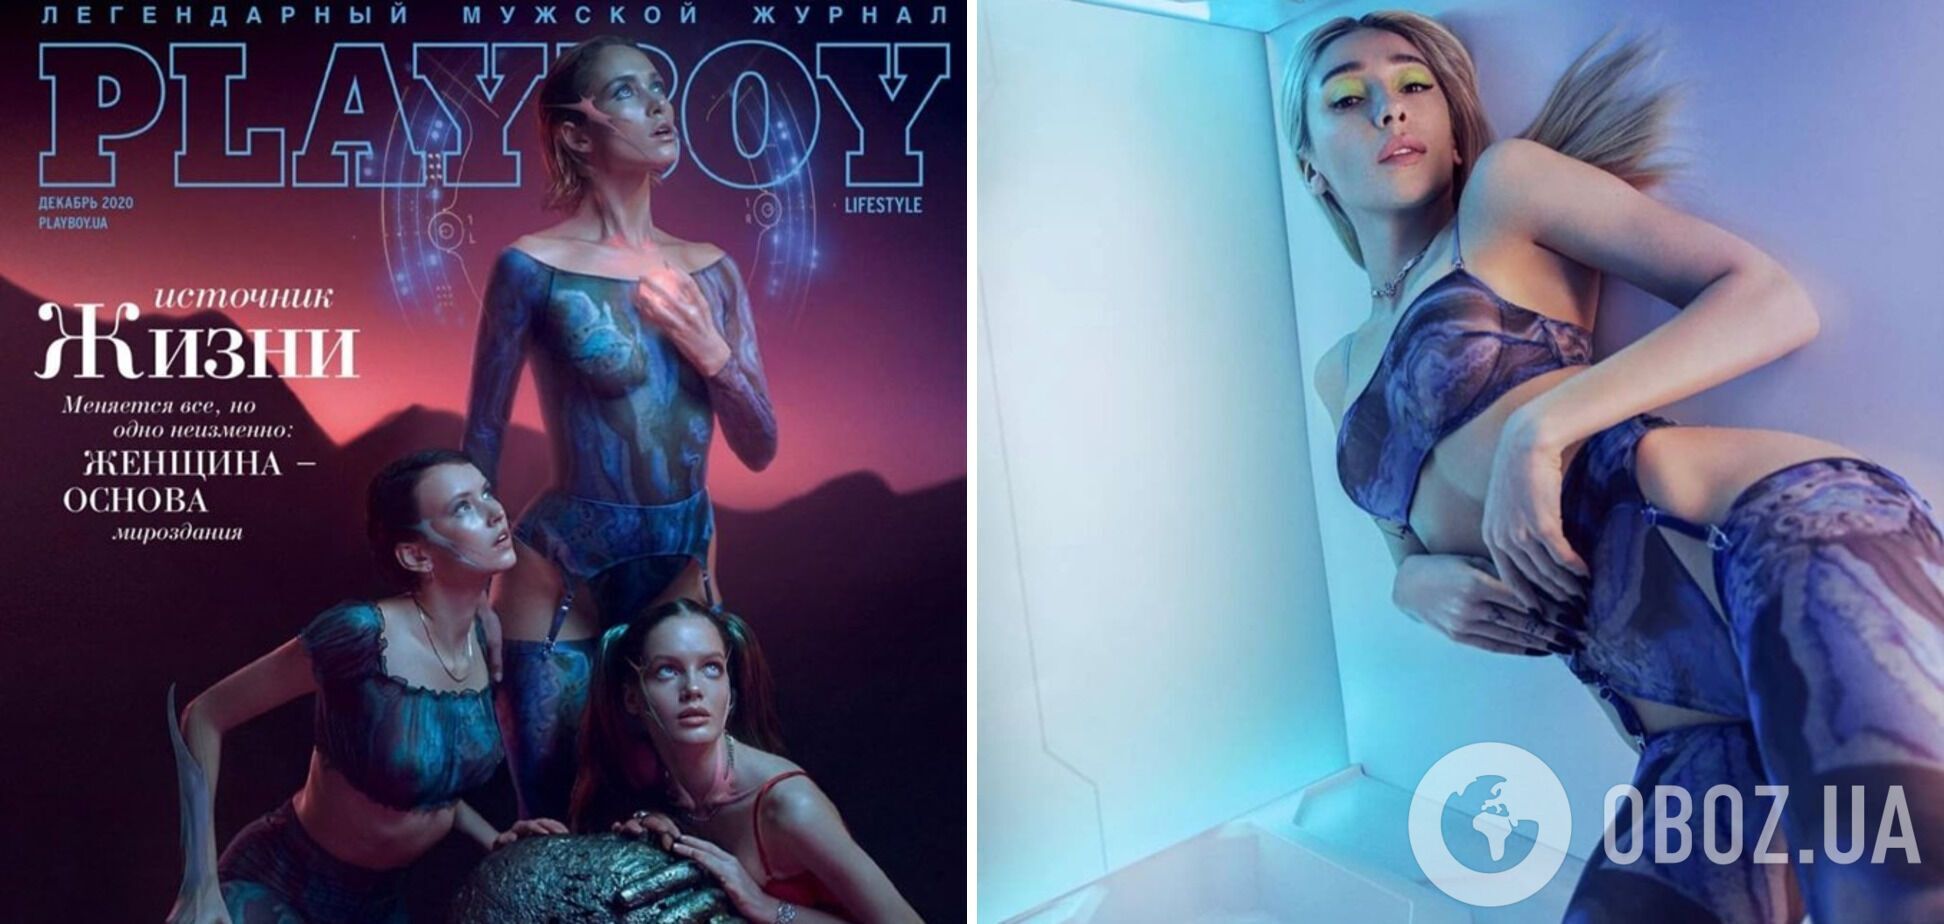 Російська версія журналу скопіявала тематику українського випуску Playboy